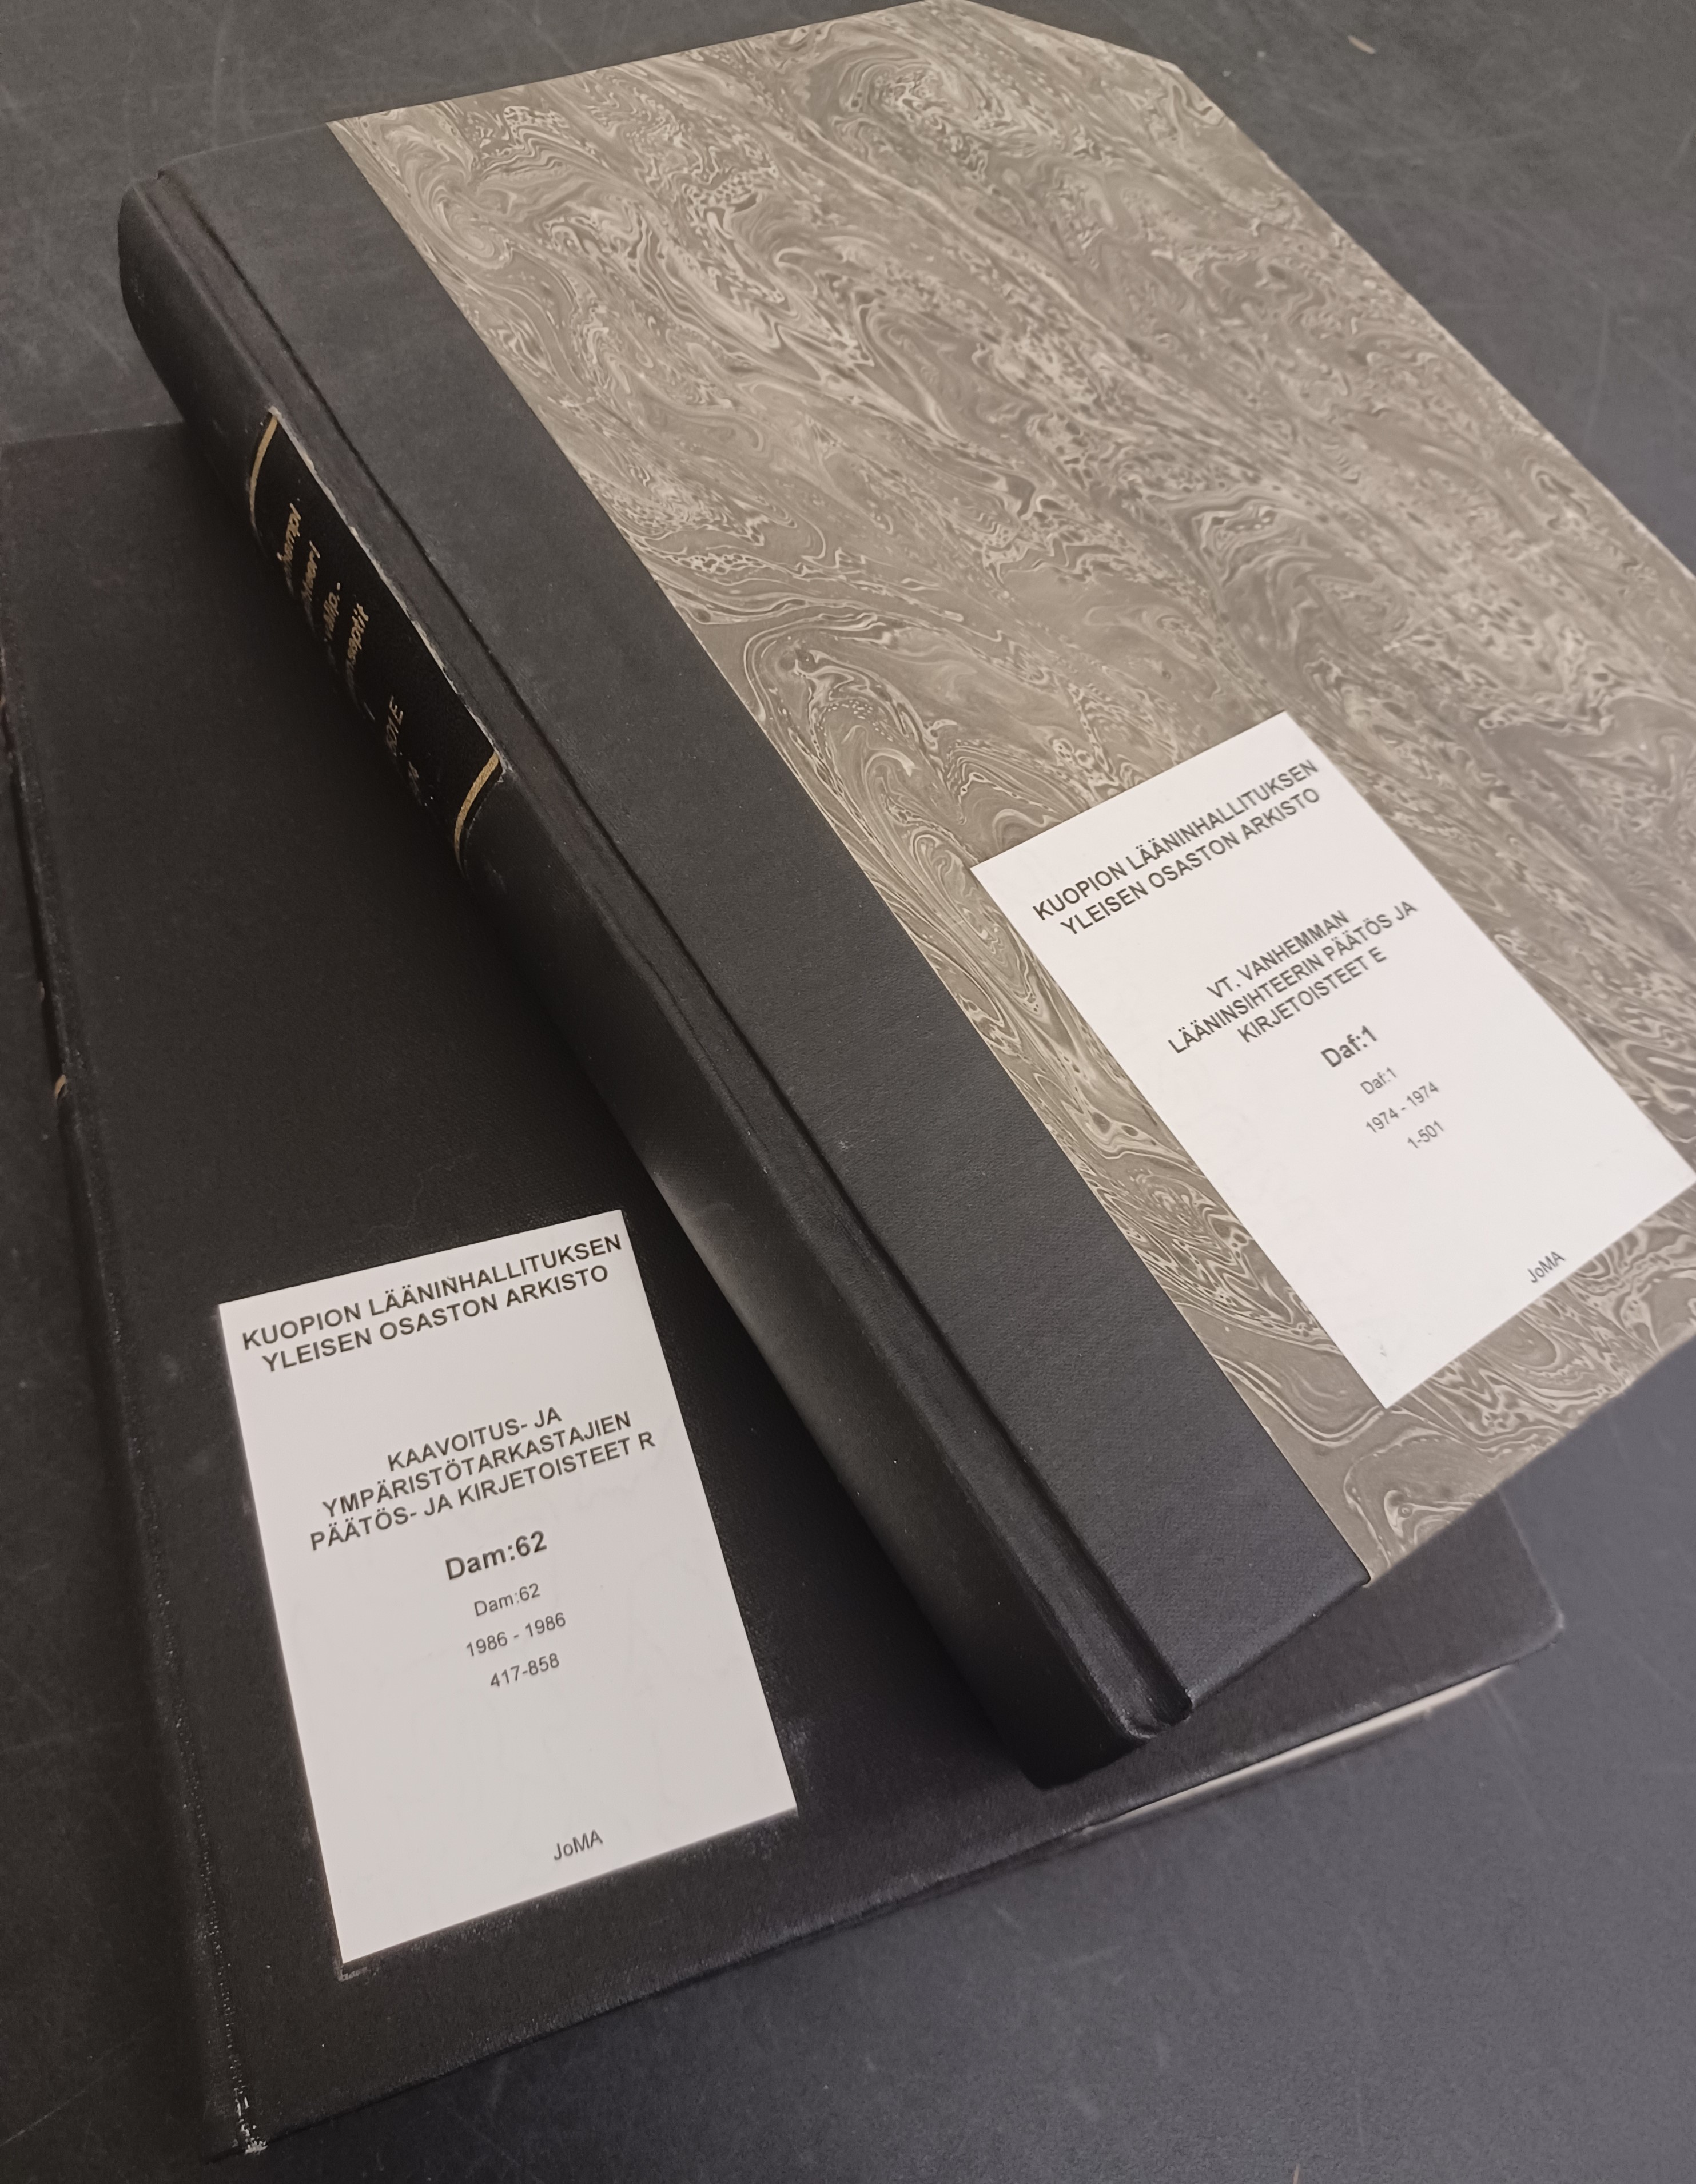 Pöydällä on kaksi suljettua kirjaa, joiden etukannessa on nimiö ja siinä arkistoyksikön tiedot.